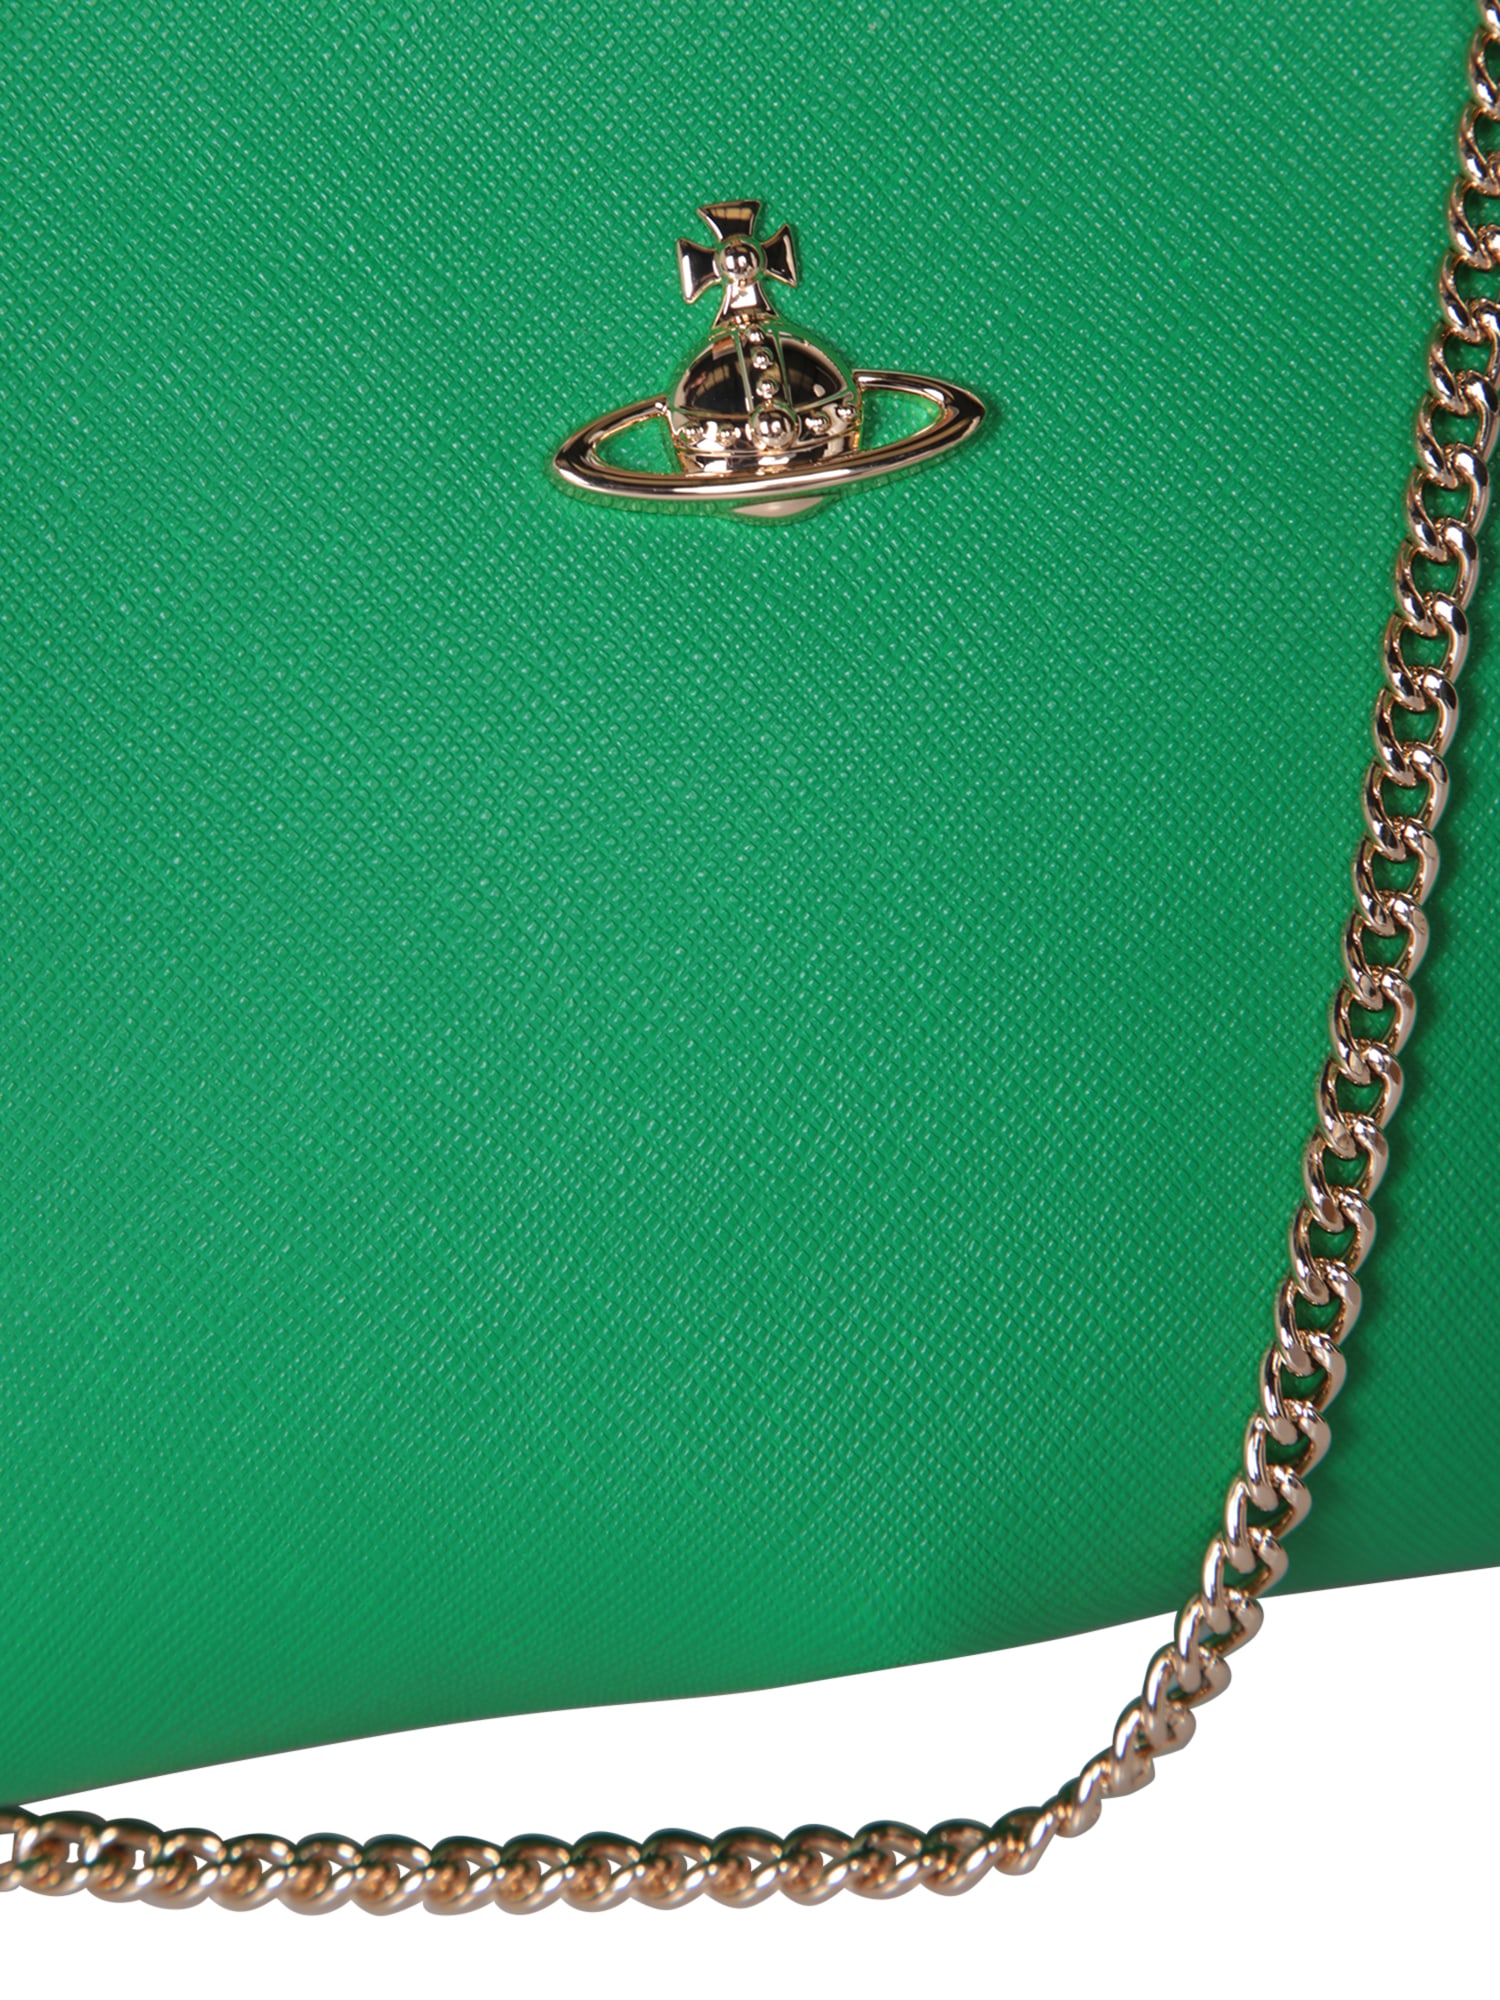 Shop Vivienne Westwood Granny Frame Purse Green Bag